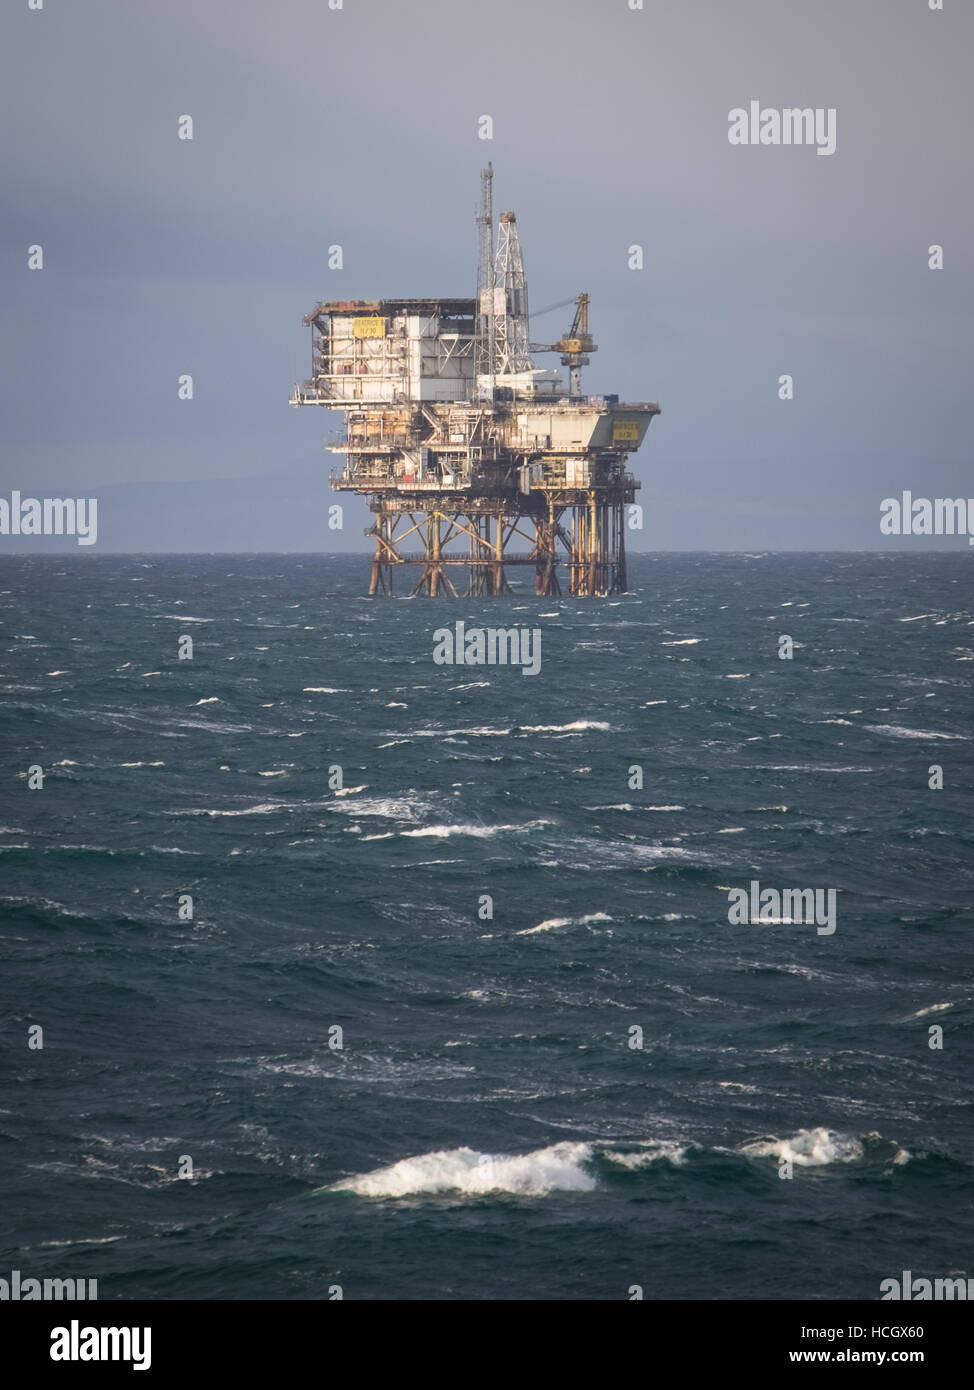 La plate-forme pétrolière, Beatrice B (11/30) dans le Moray Firth, Ecosse Banque D'Images